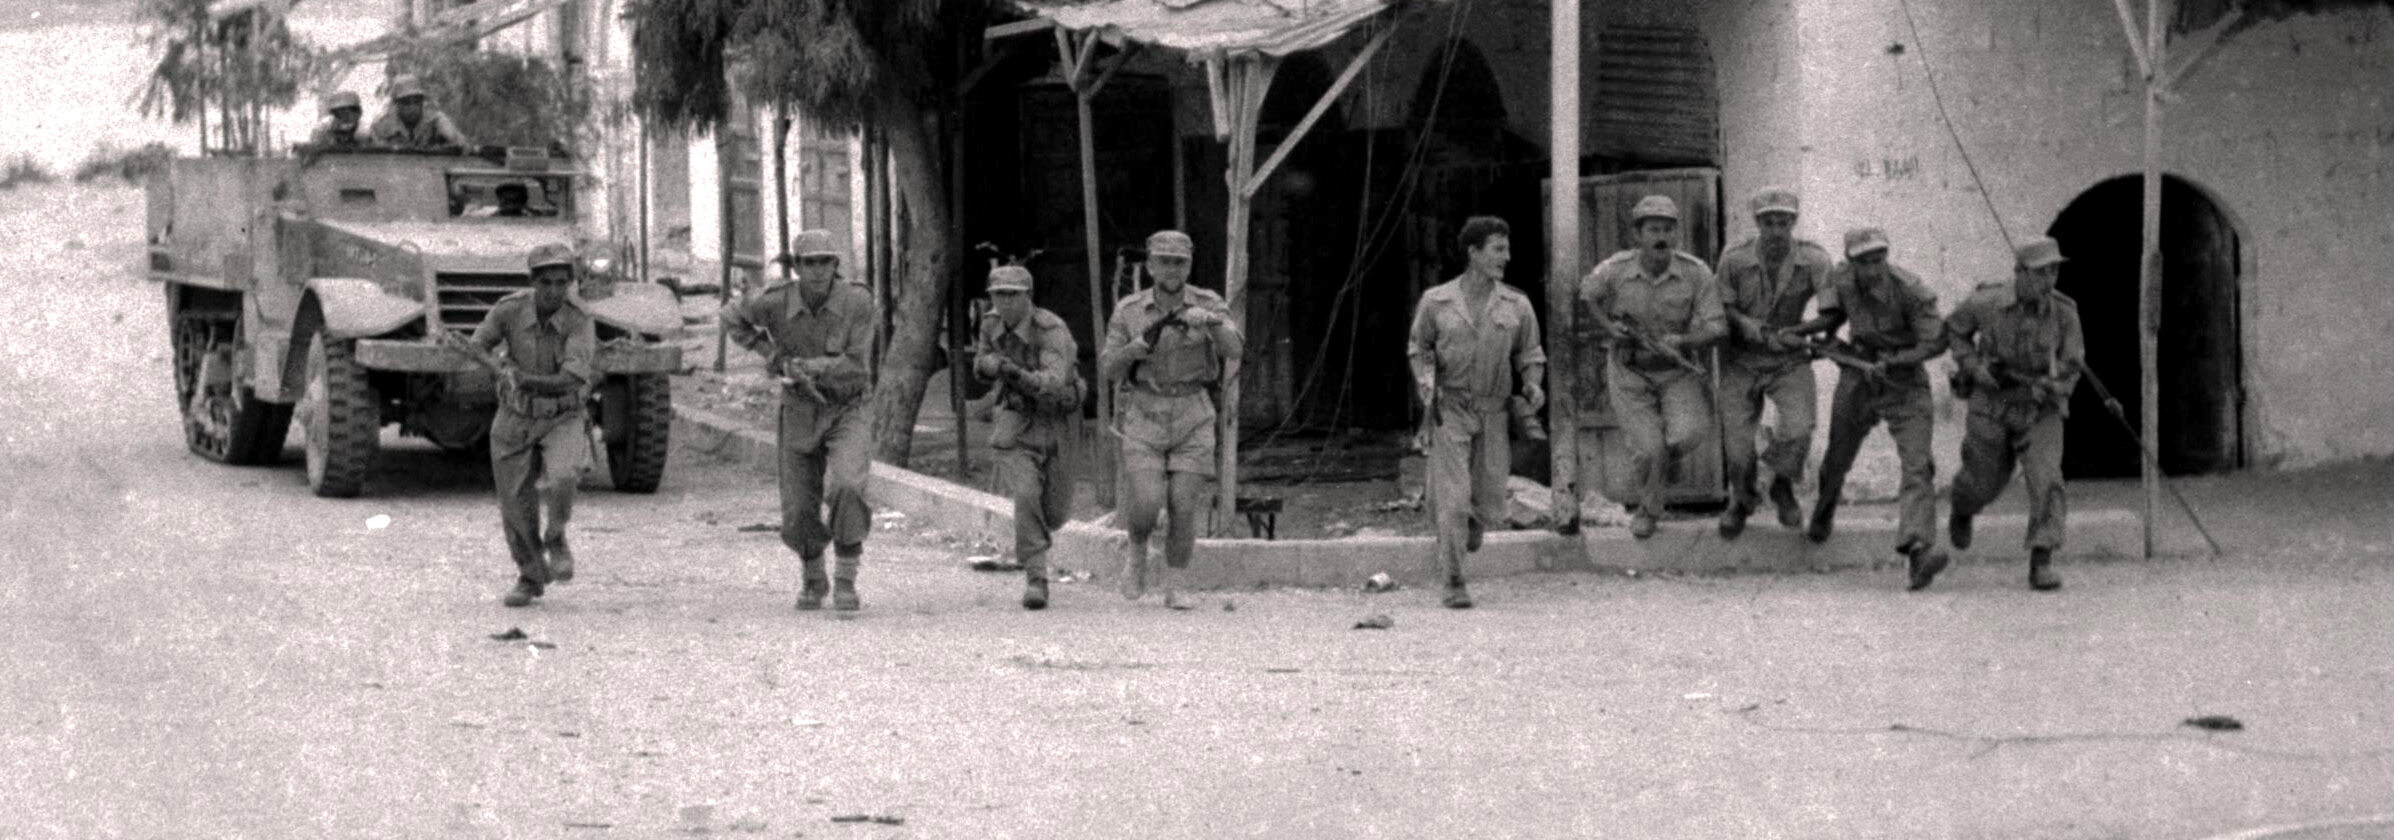 Izraelscy żołnierze zajmujący Beer Szewę, 20 października 1948 r.